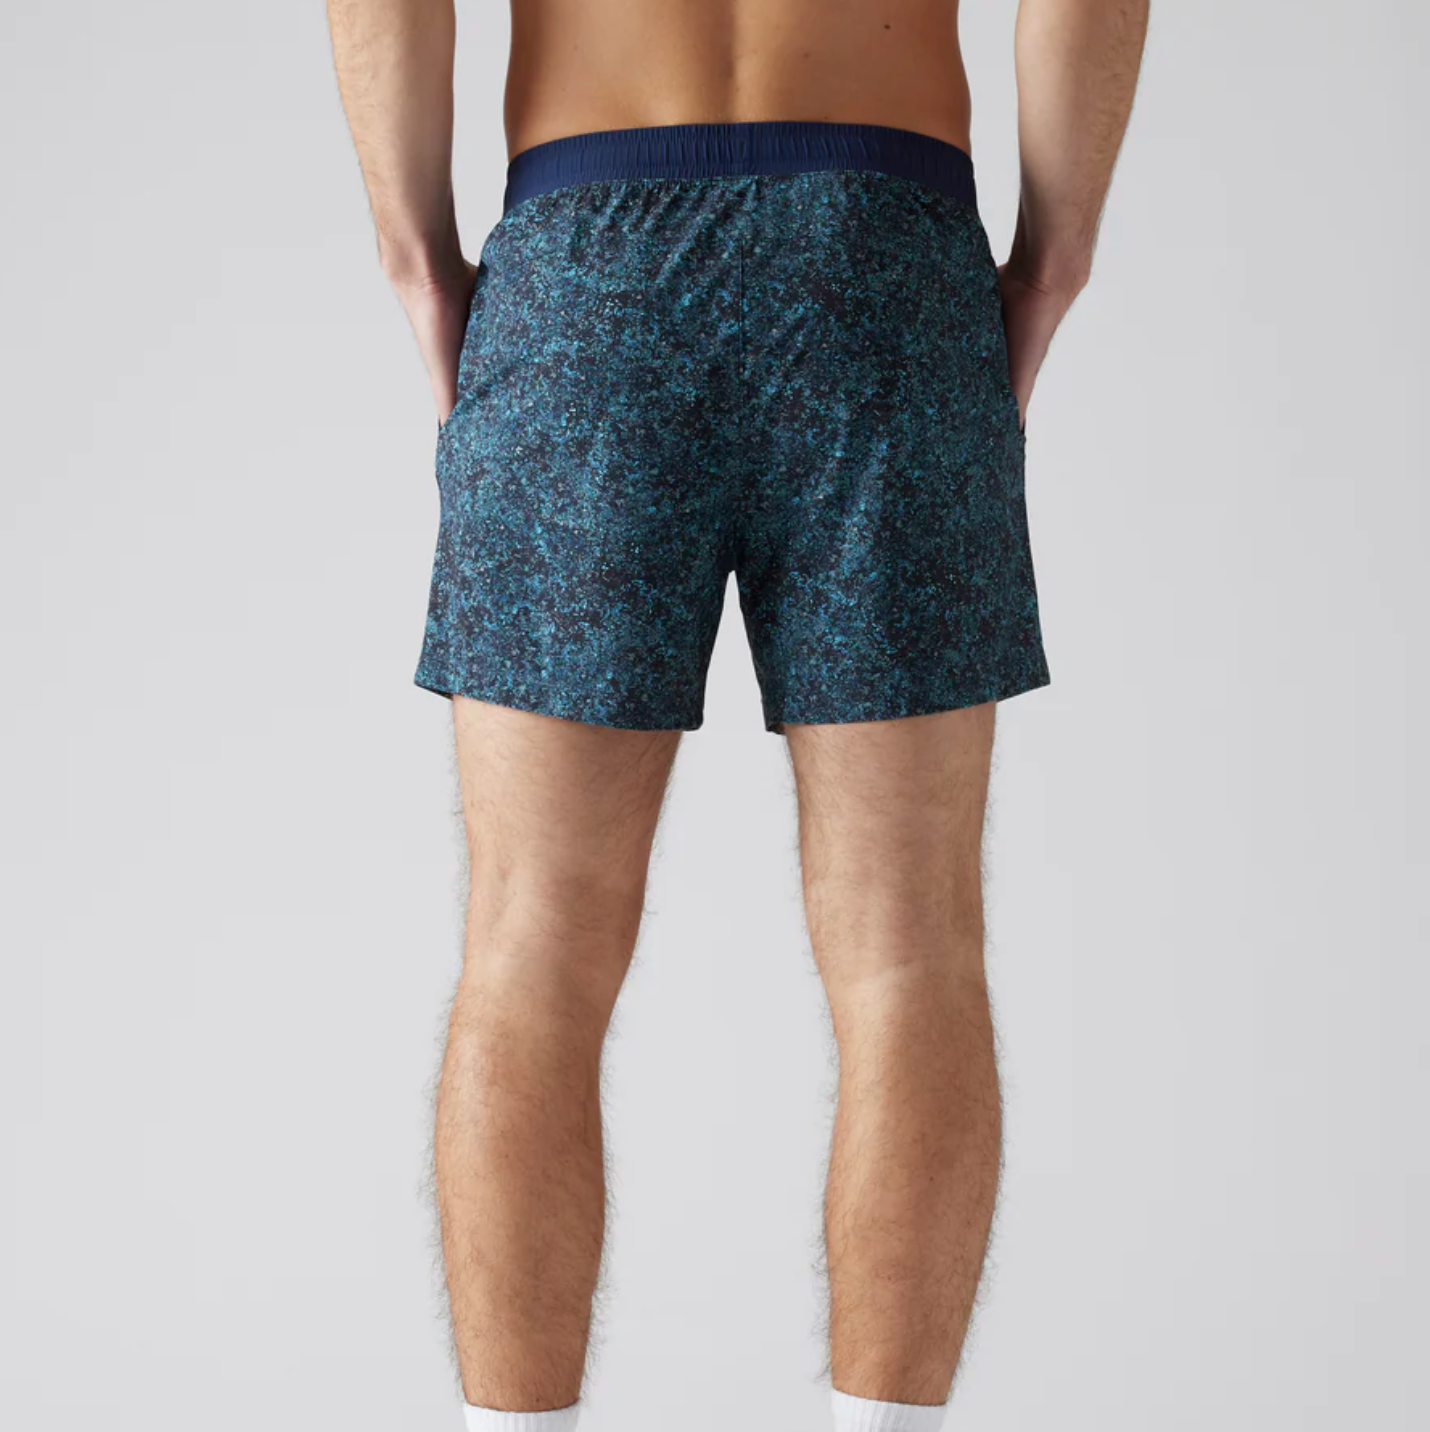 Rhone - 5" Pursuit Shorts - Unlined Navy Pebble Print